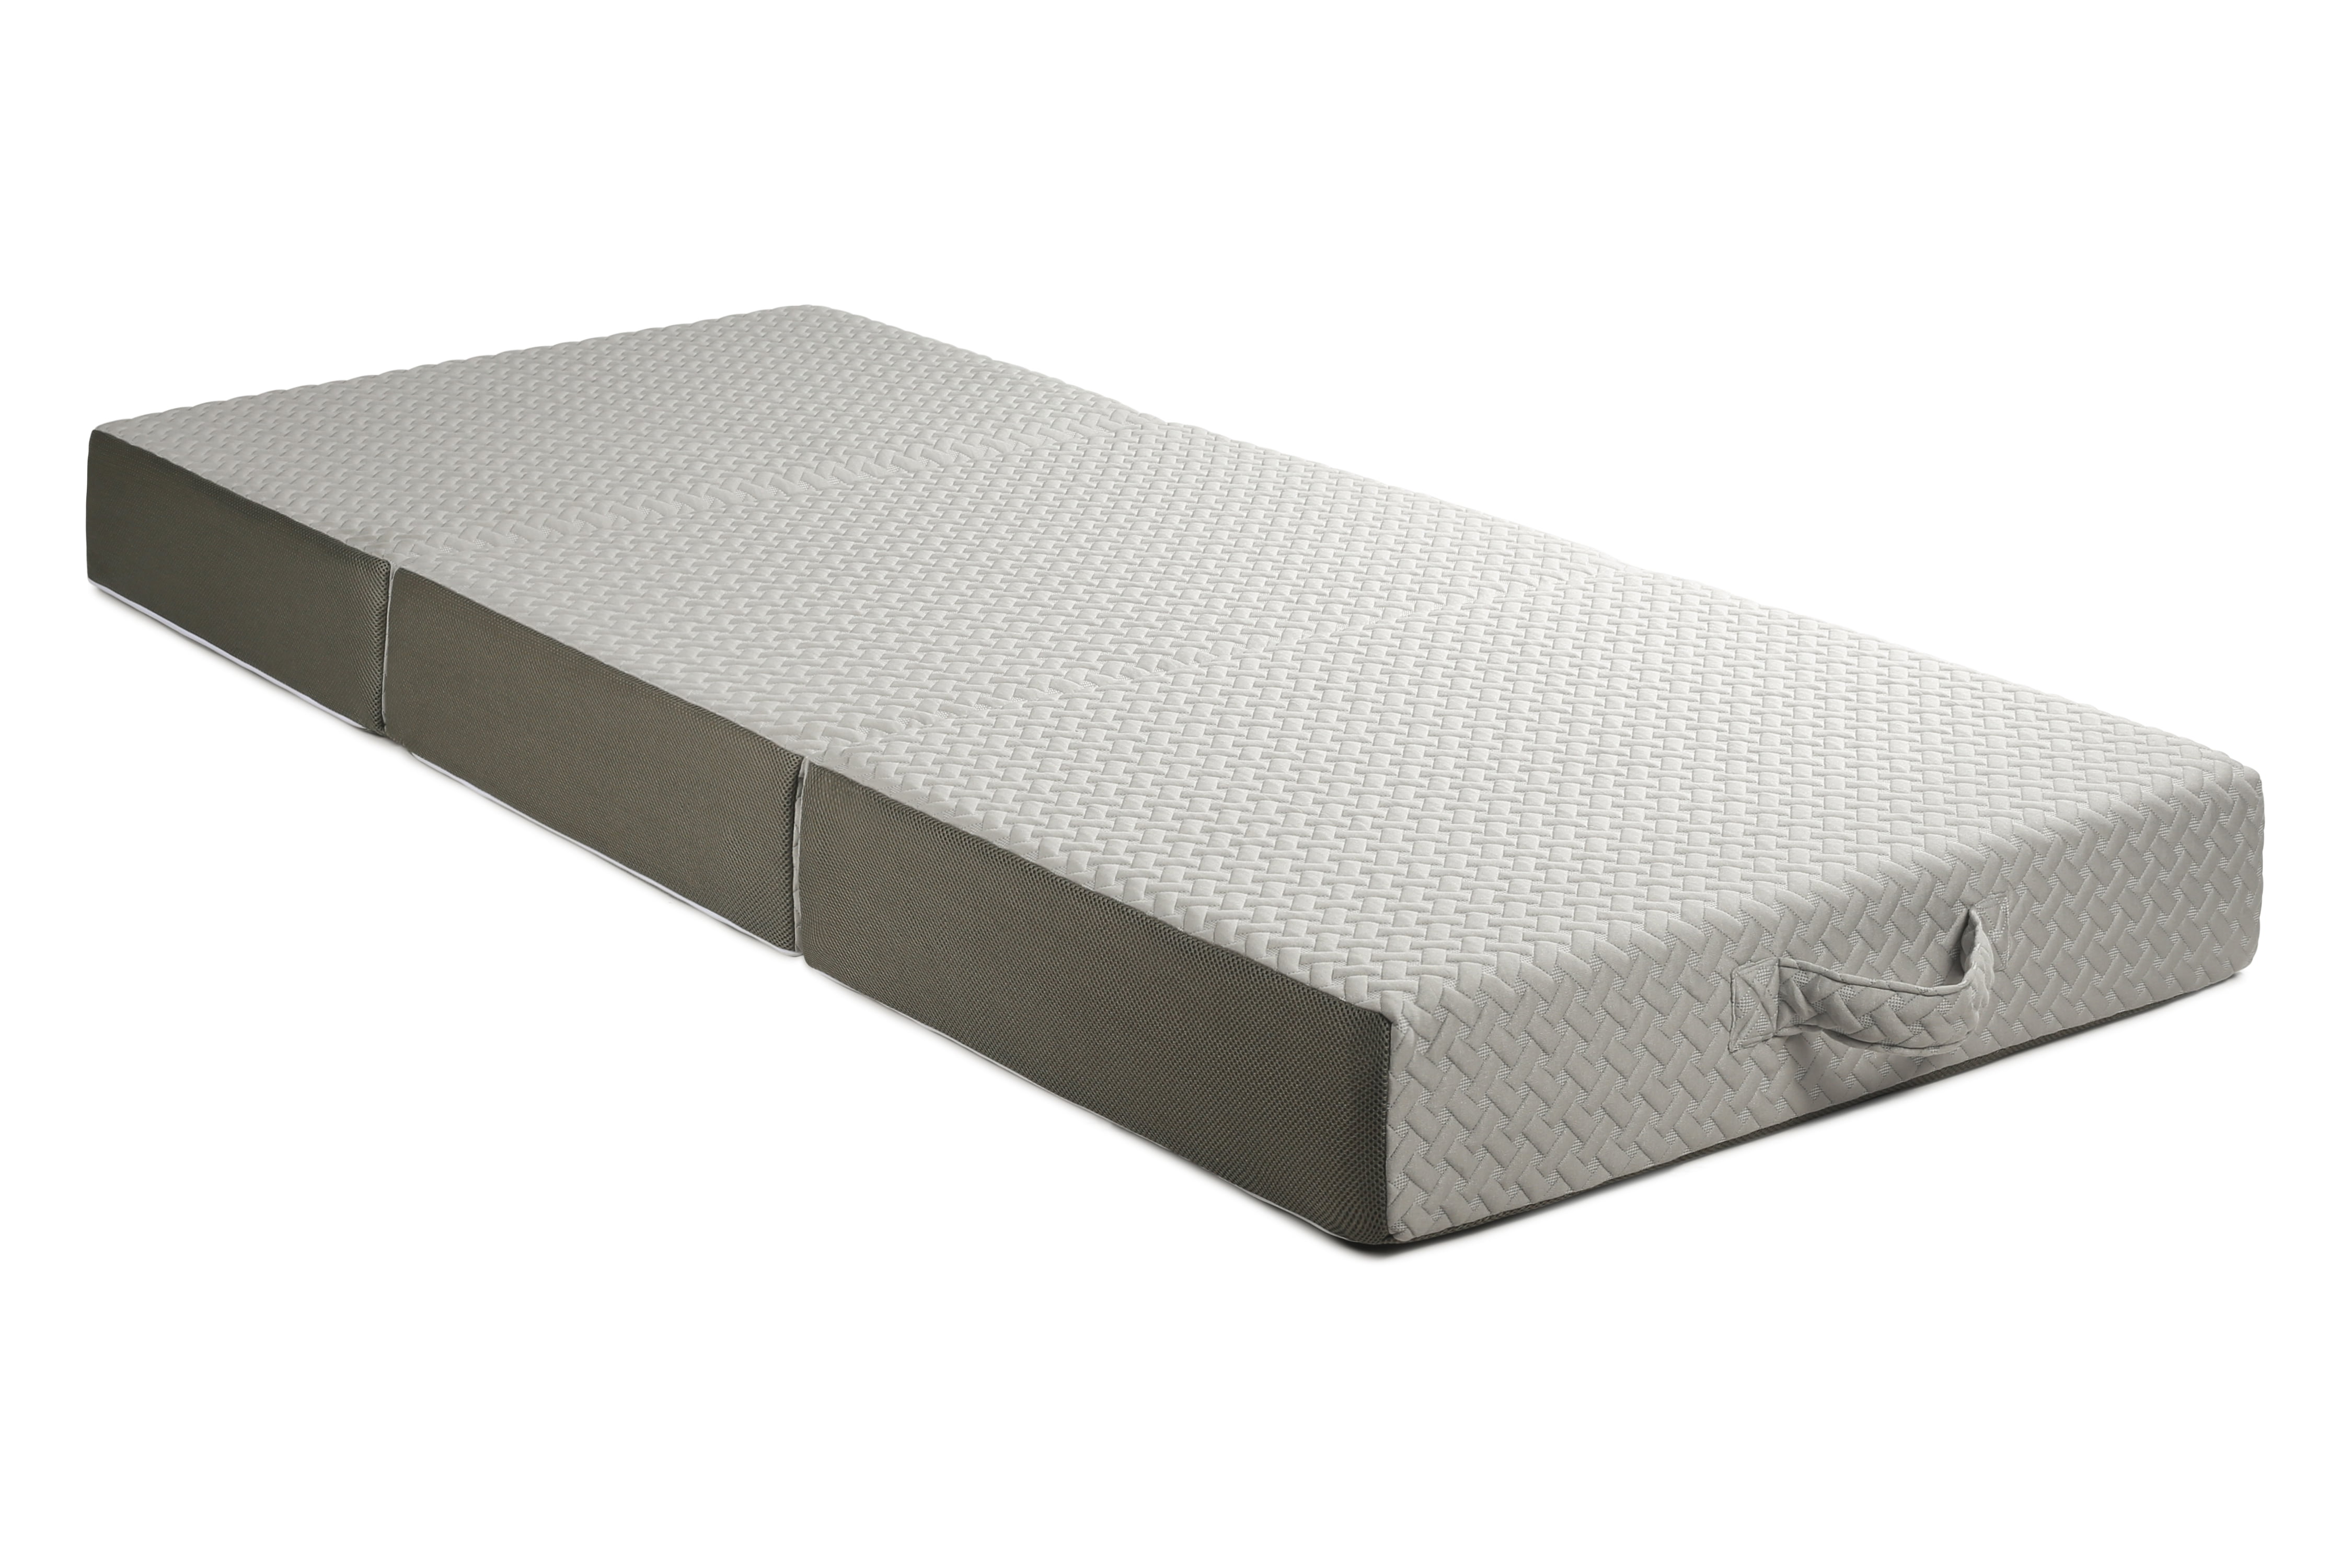 5.5 ft truck bed foam mattress